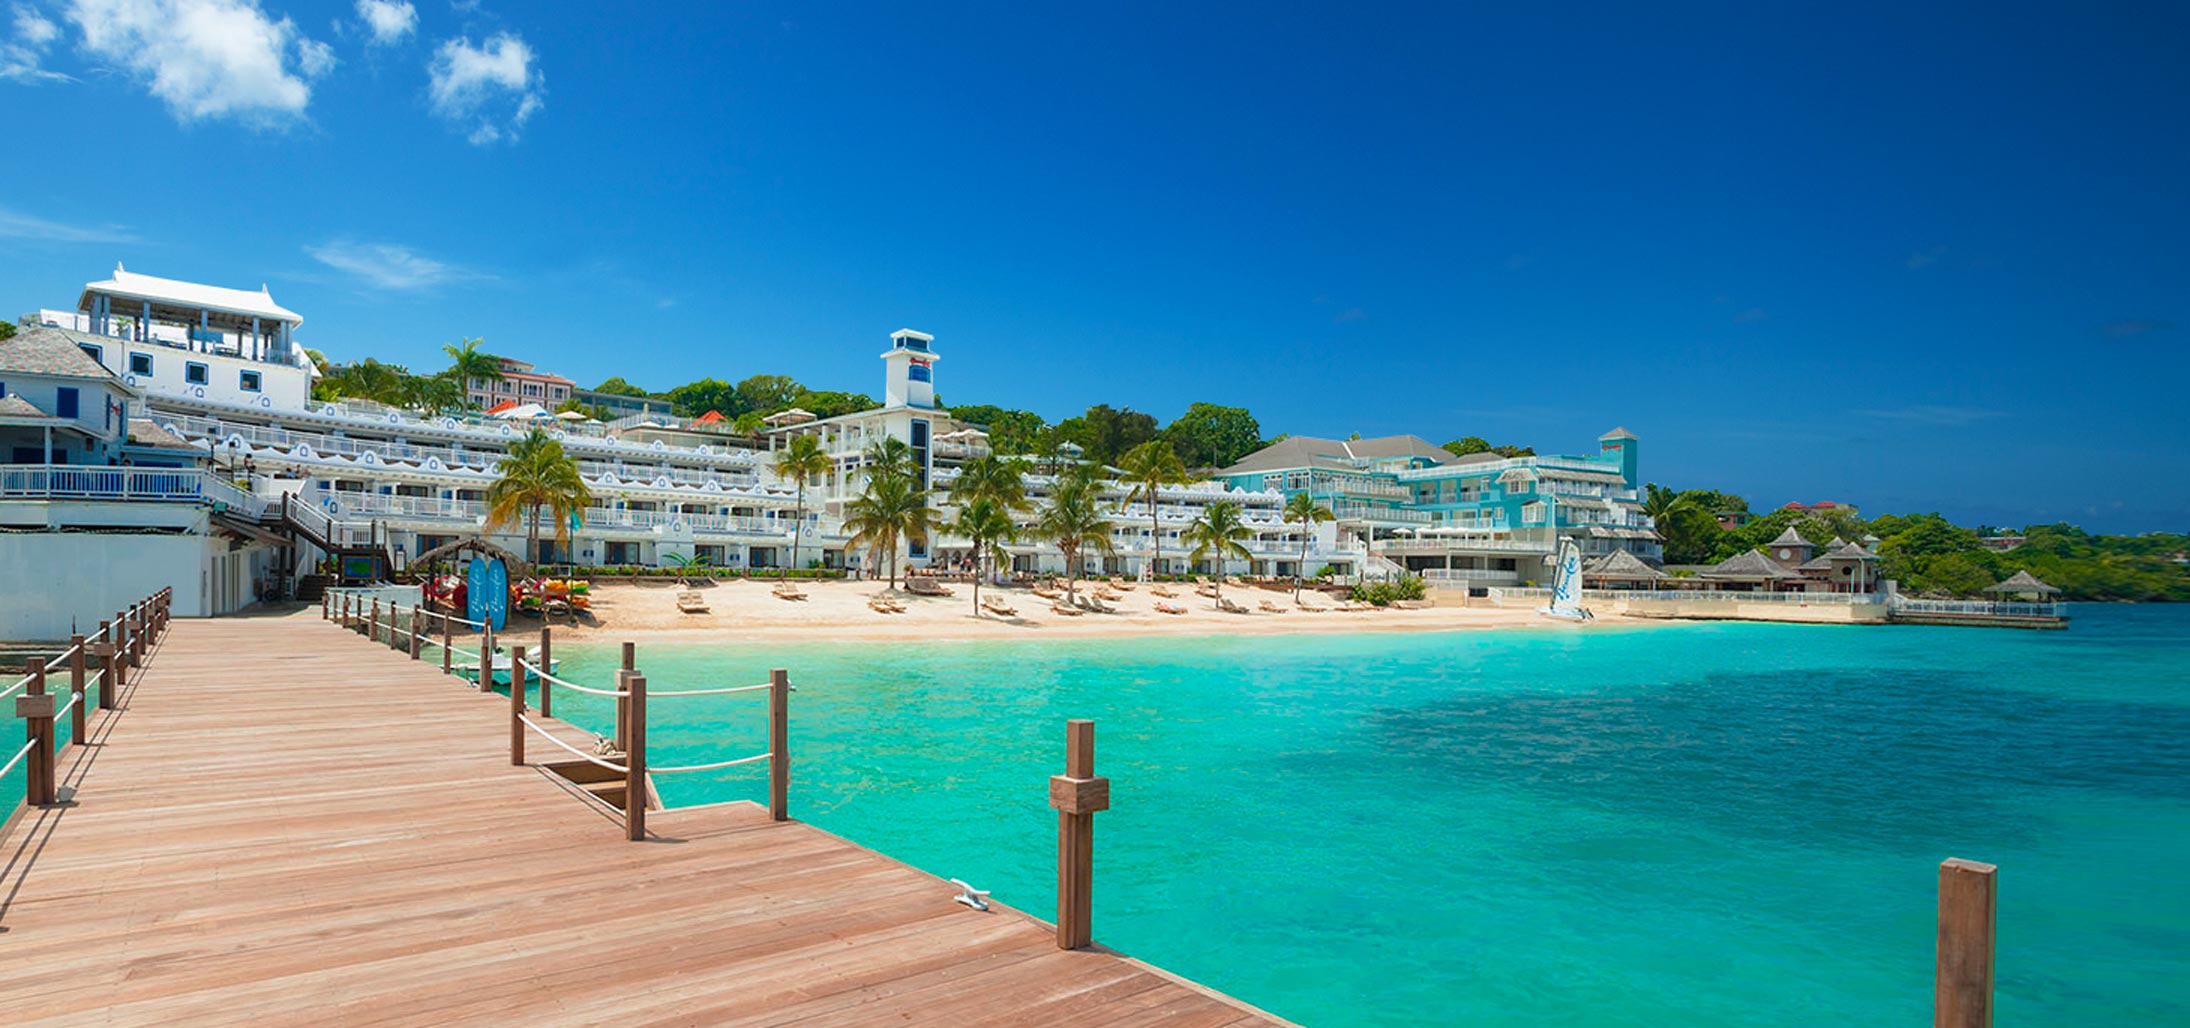 AllInclusive Carribean Beach Vacation Deals  Beaches